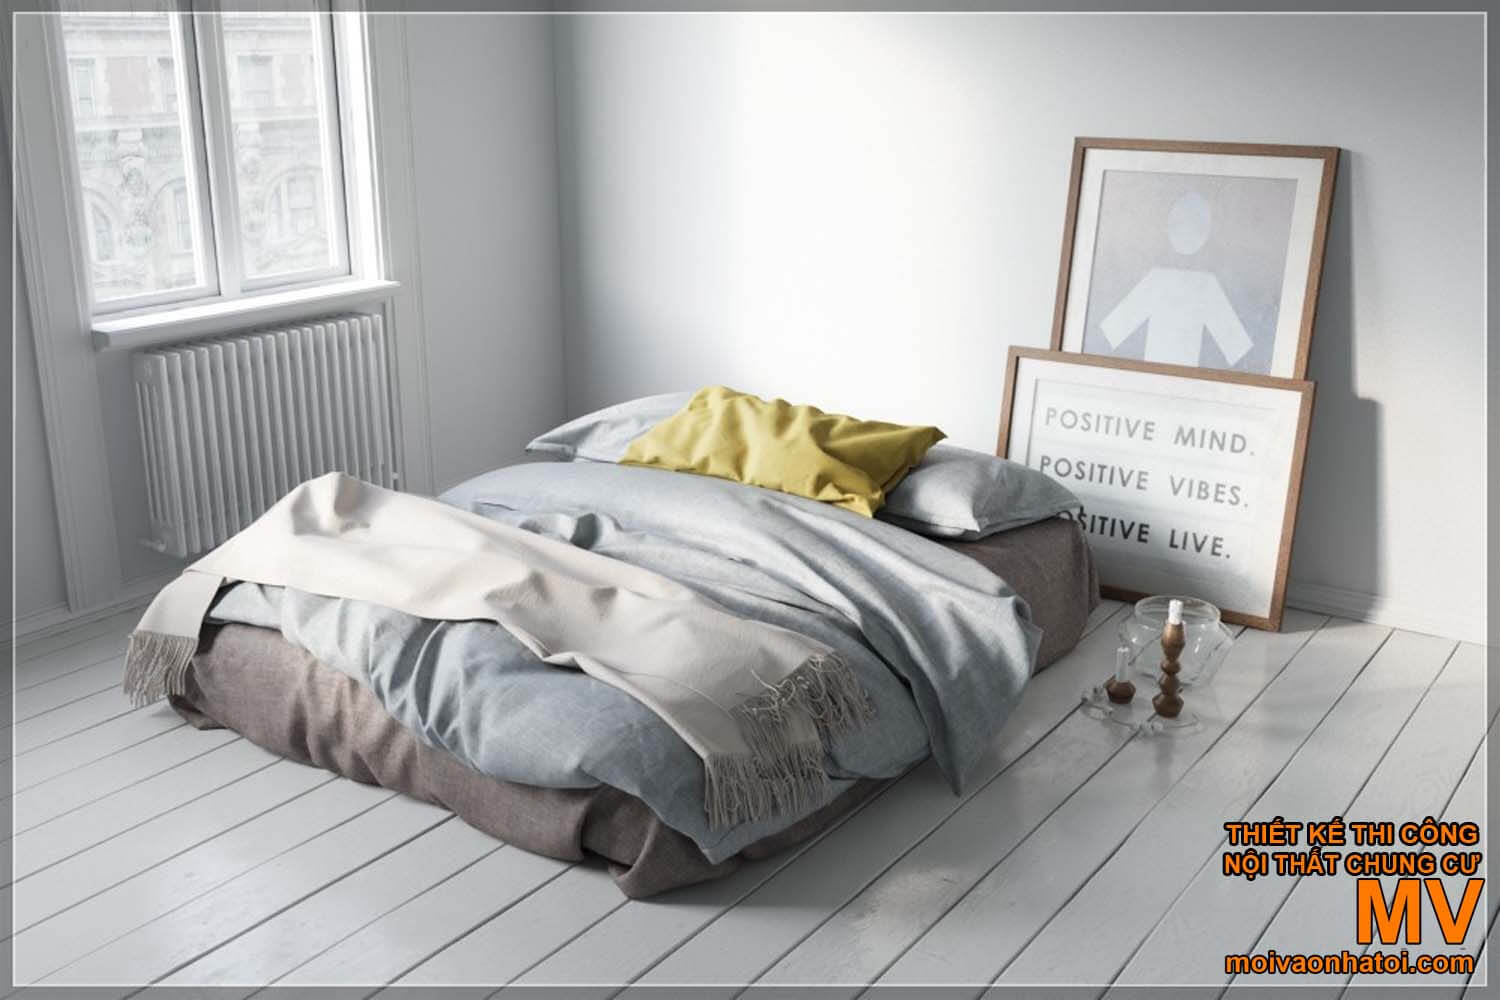 Bedroom design - decorated Scandinavian beds